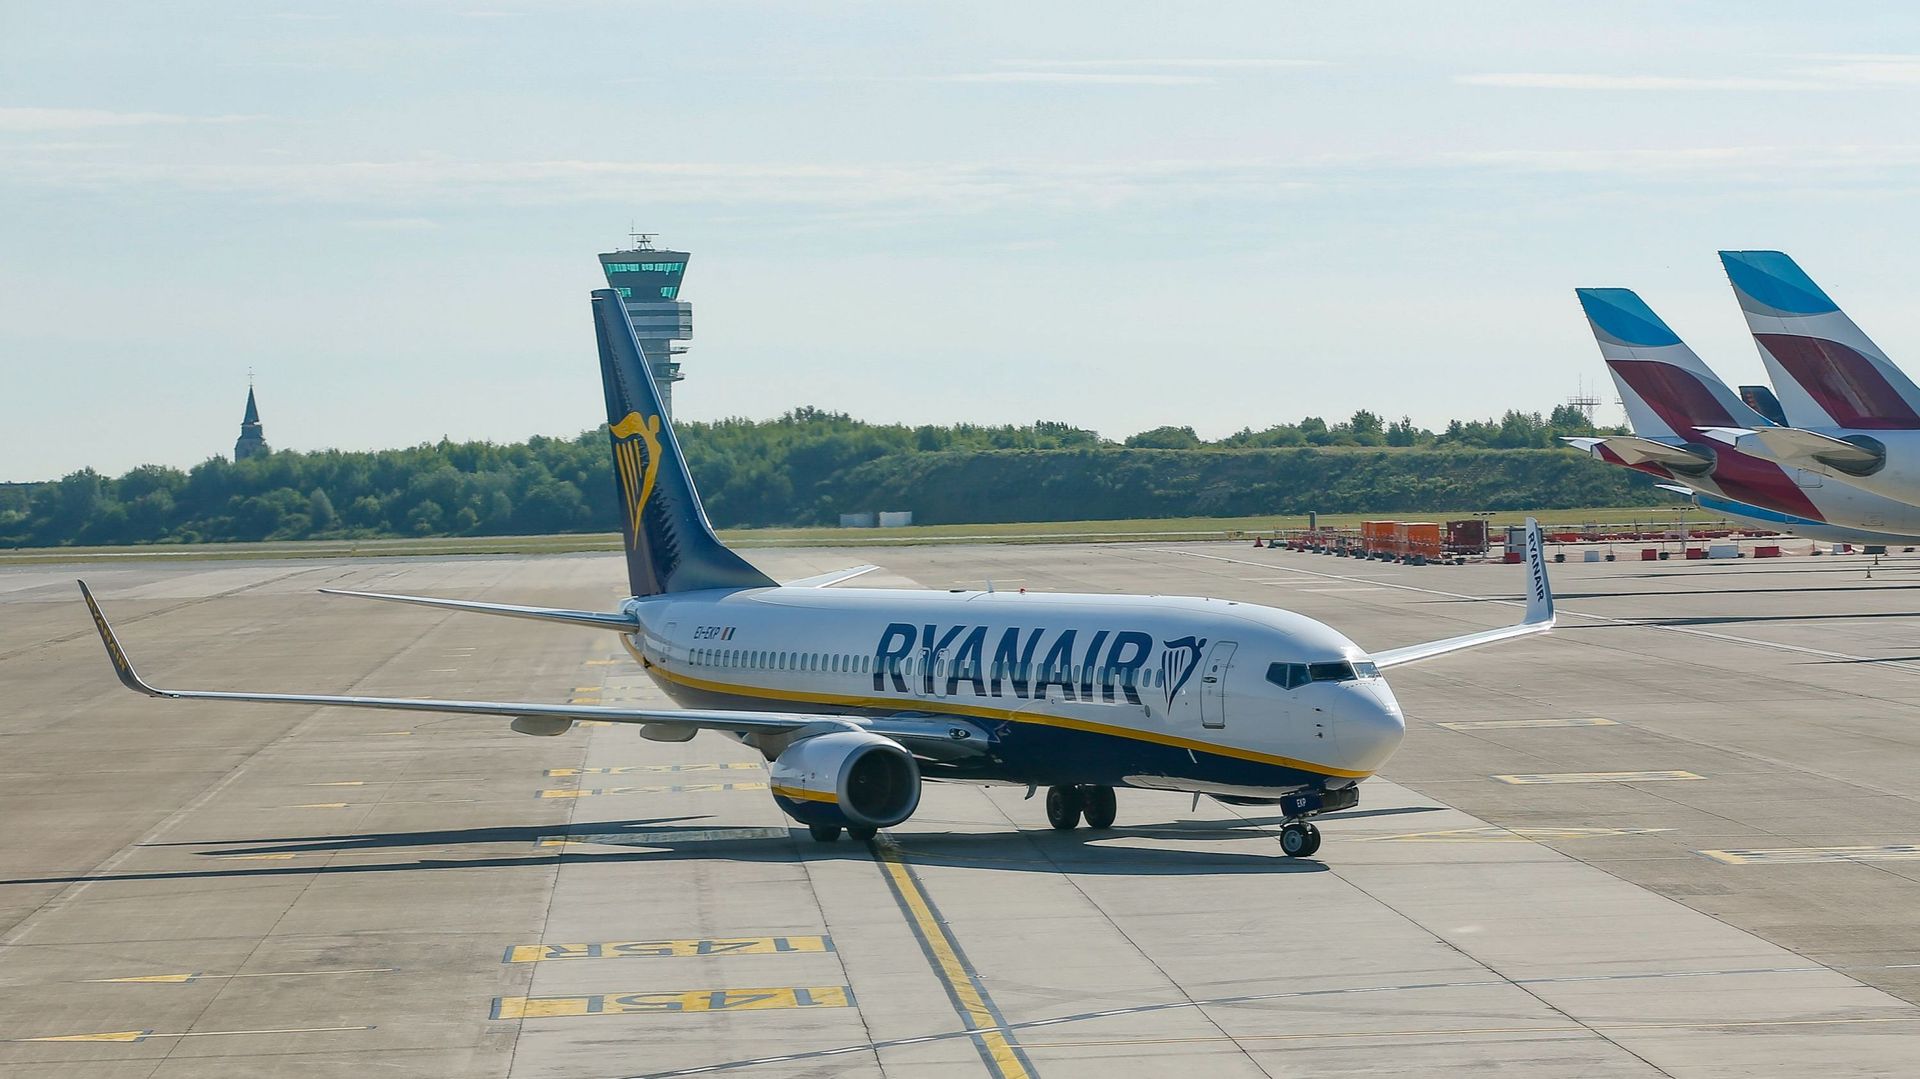 Un avion de la compagnie aérienne Ryanair ici sur le tarmac de Zaventem.